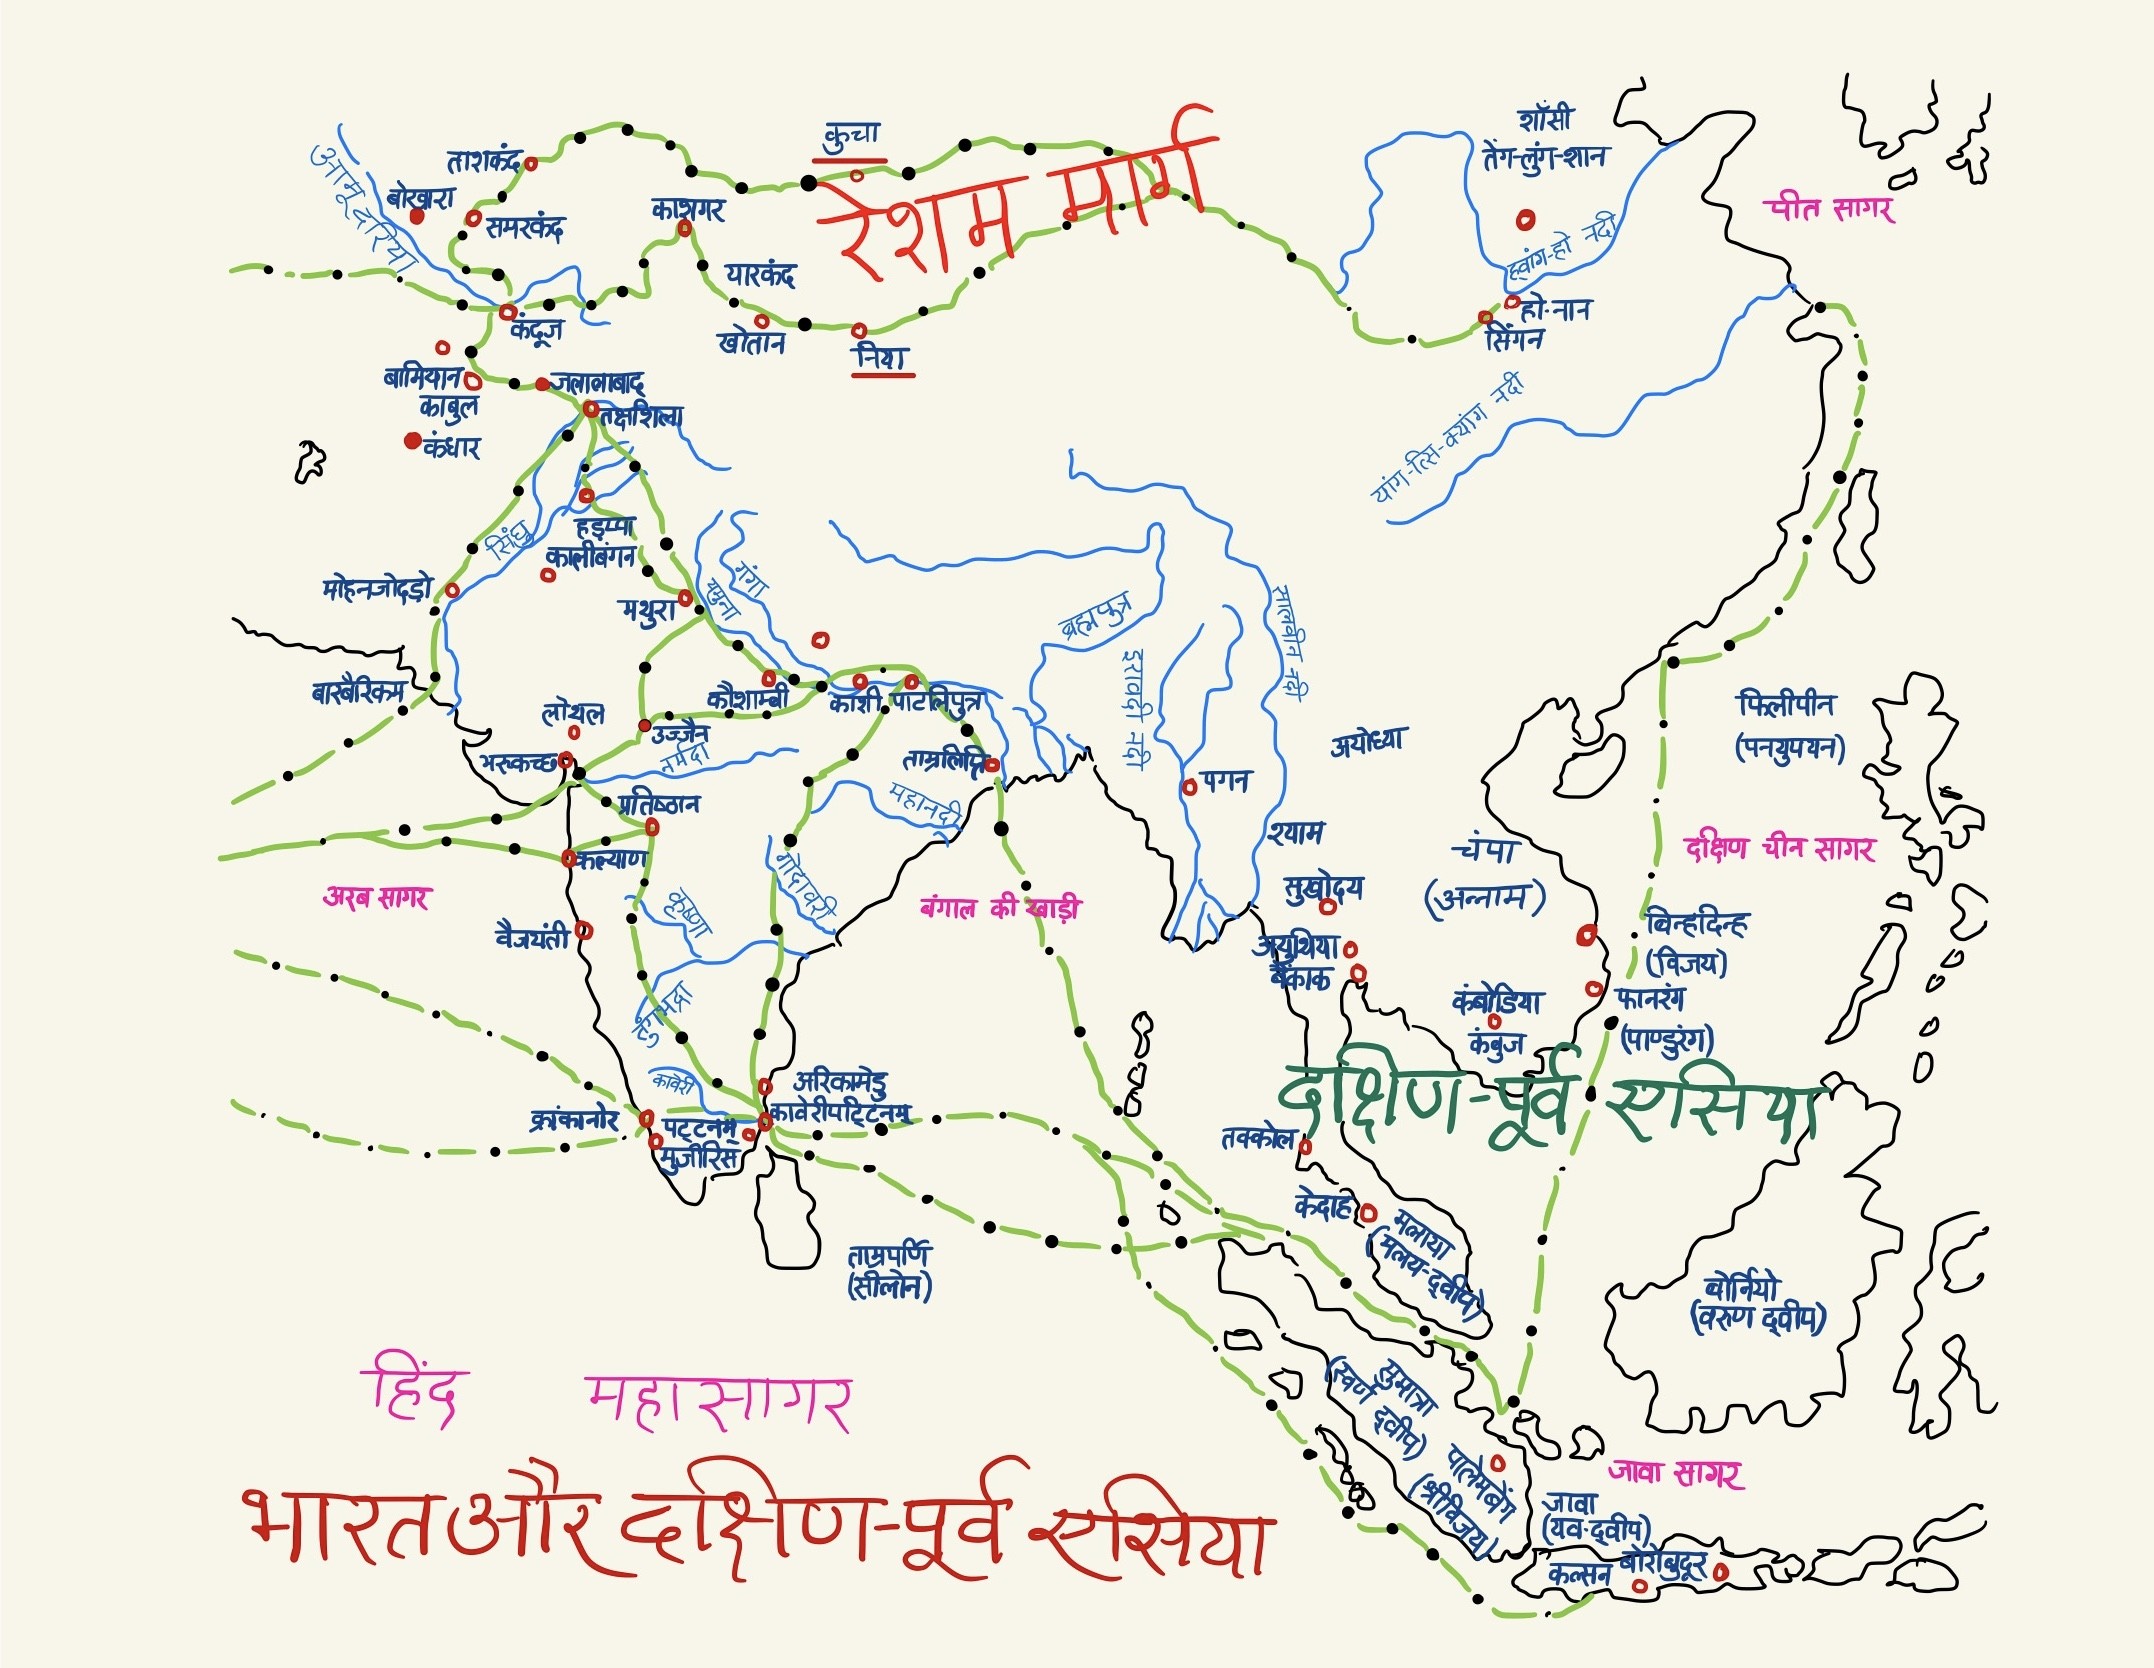 भारत और दक्षिण-पूर्व एशिया के सम्बन्ध